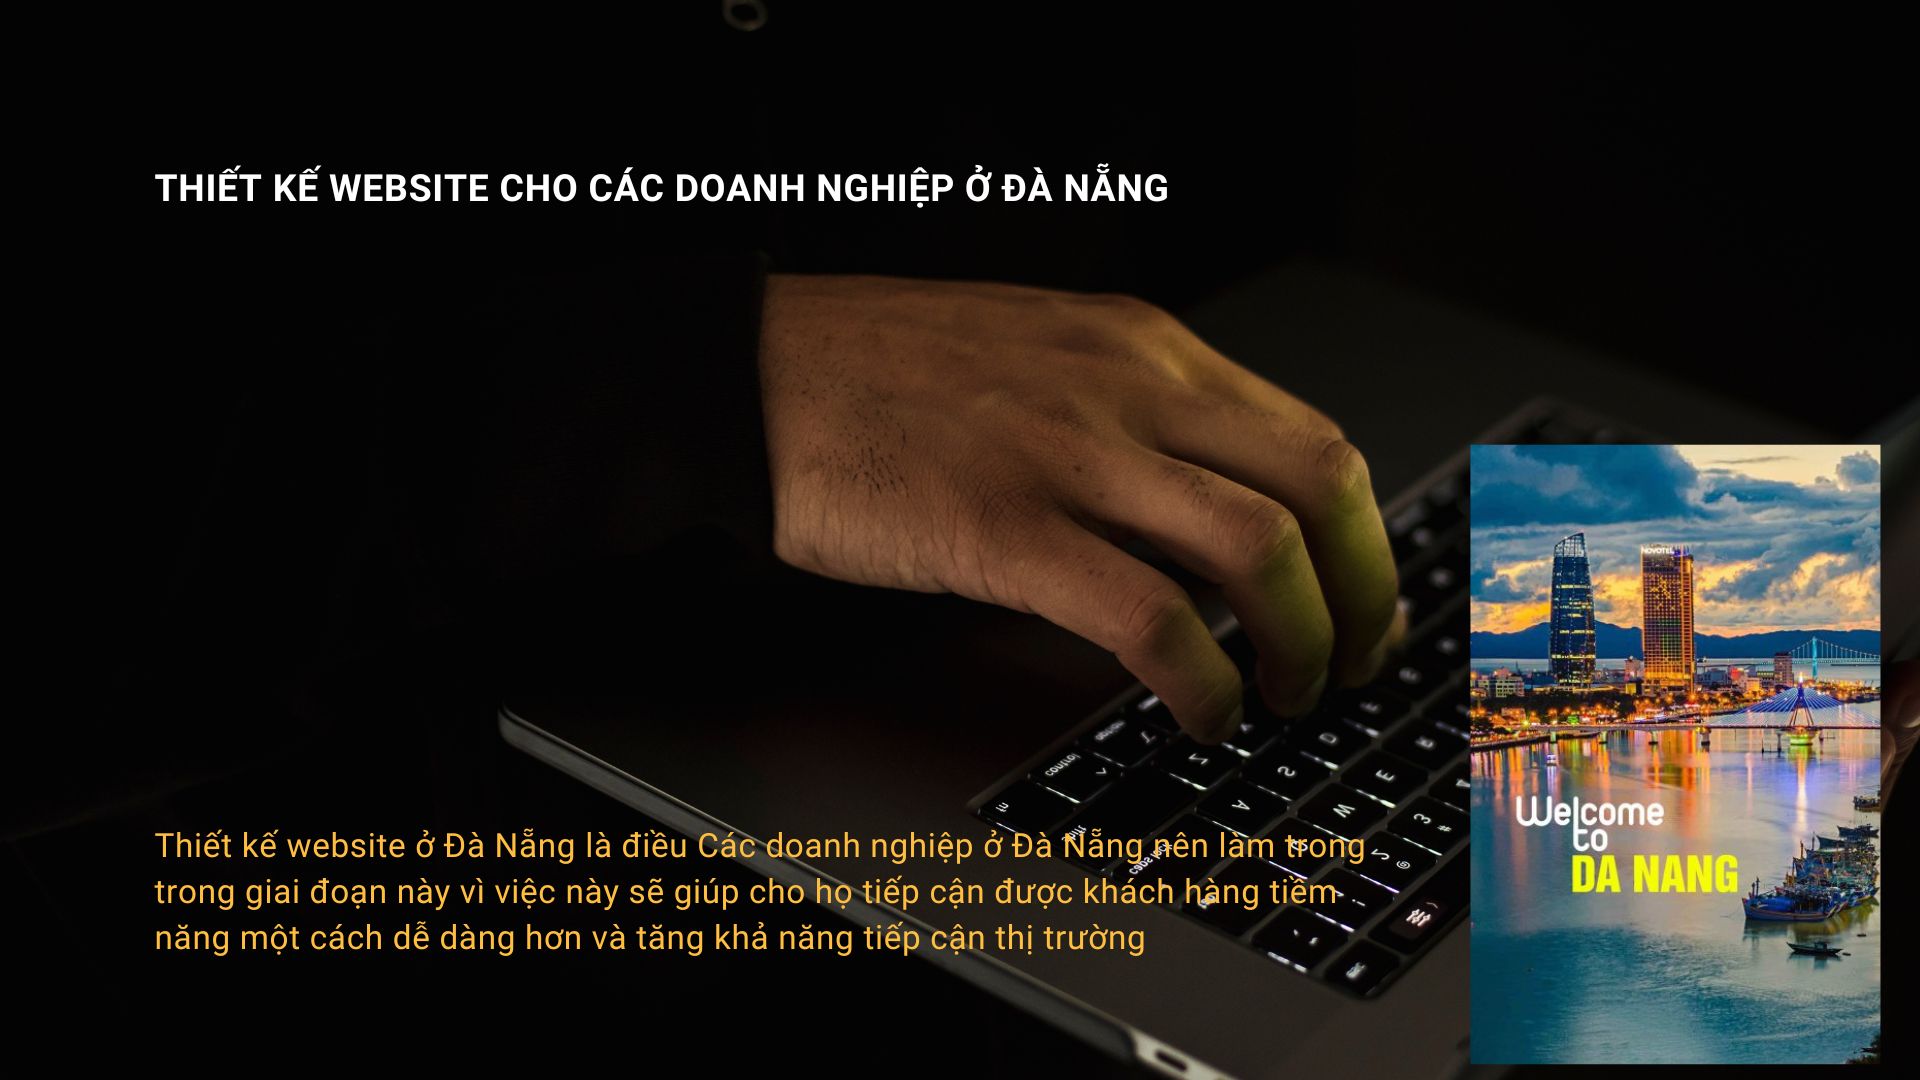 Thiết kế website ở Đà Nẵng